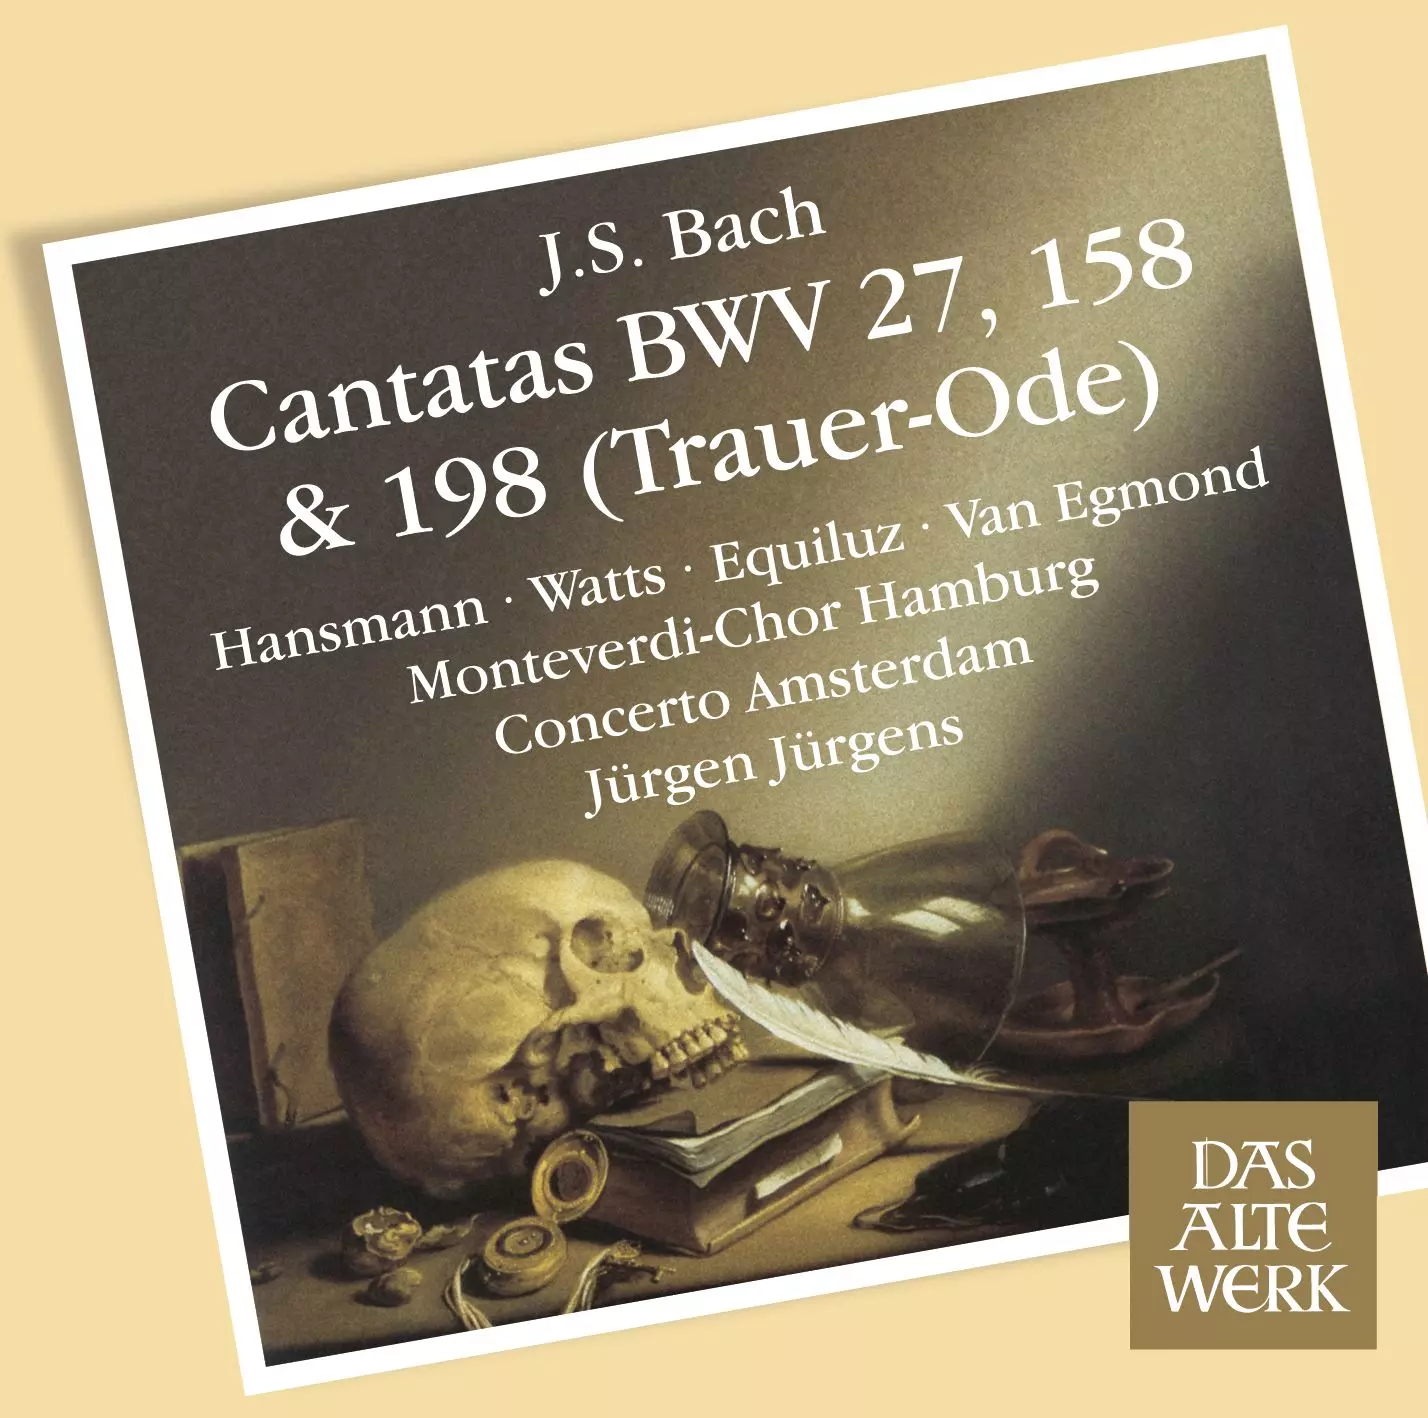 Bach: Cantatas Nos 198, 'Funeral Ode', 158 & 27